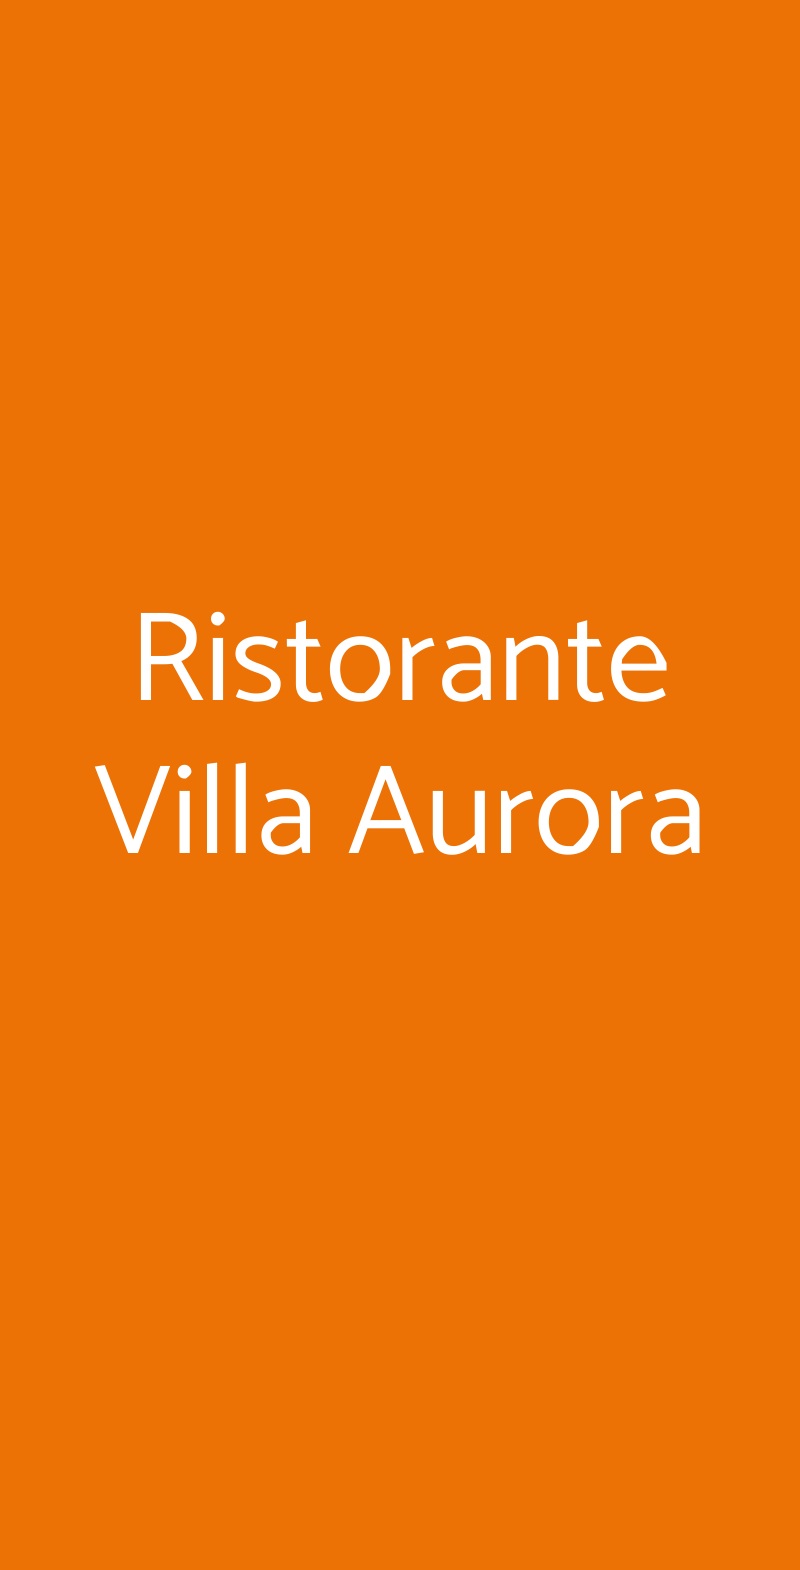 Ristorante Villa Aurora Fiesole menù 1 pagina